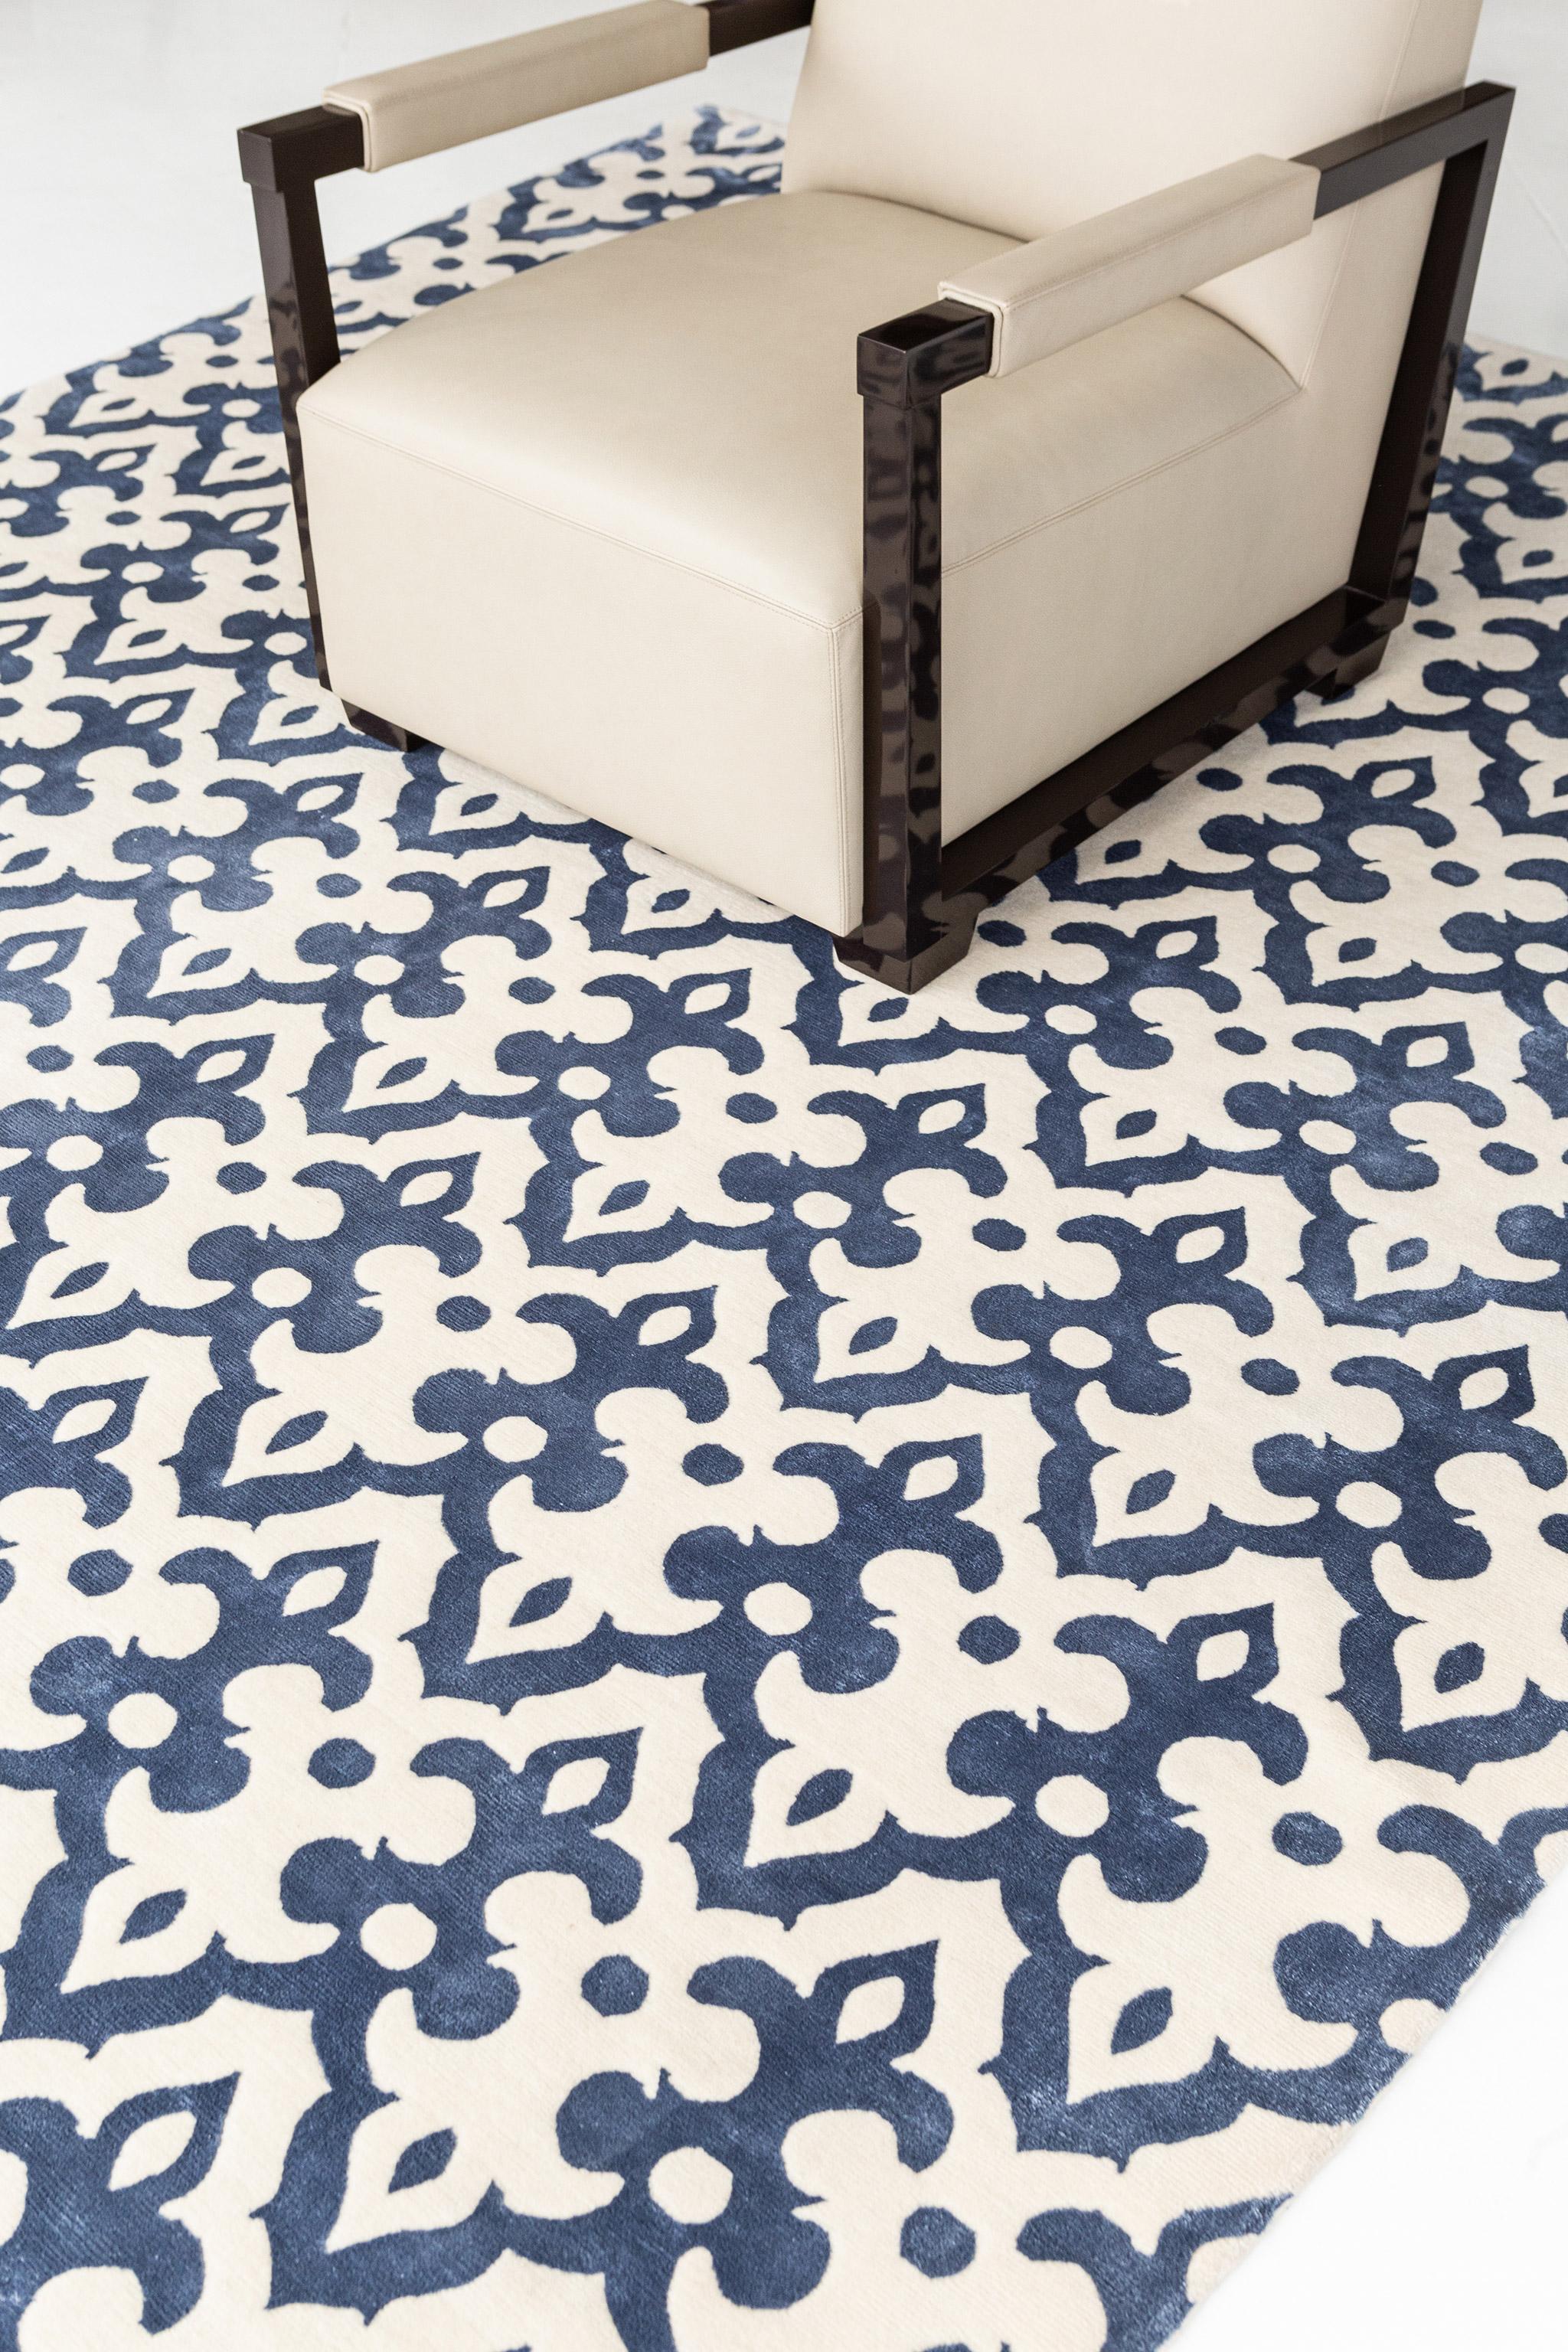 Dieser Transitional Design-Teppich Moresco' ist raffiniert und subtil, ohne auf Eleganz zu verzichten. Es weist ein sich allover wiederholendes, verziertes Muster auf, das auf einem indigoblauen Feld liegt. Mit seiner subtilen und luftigen